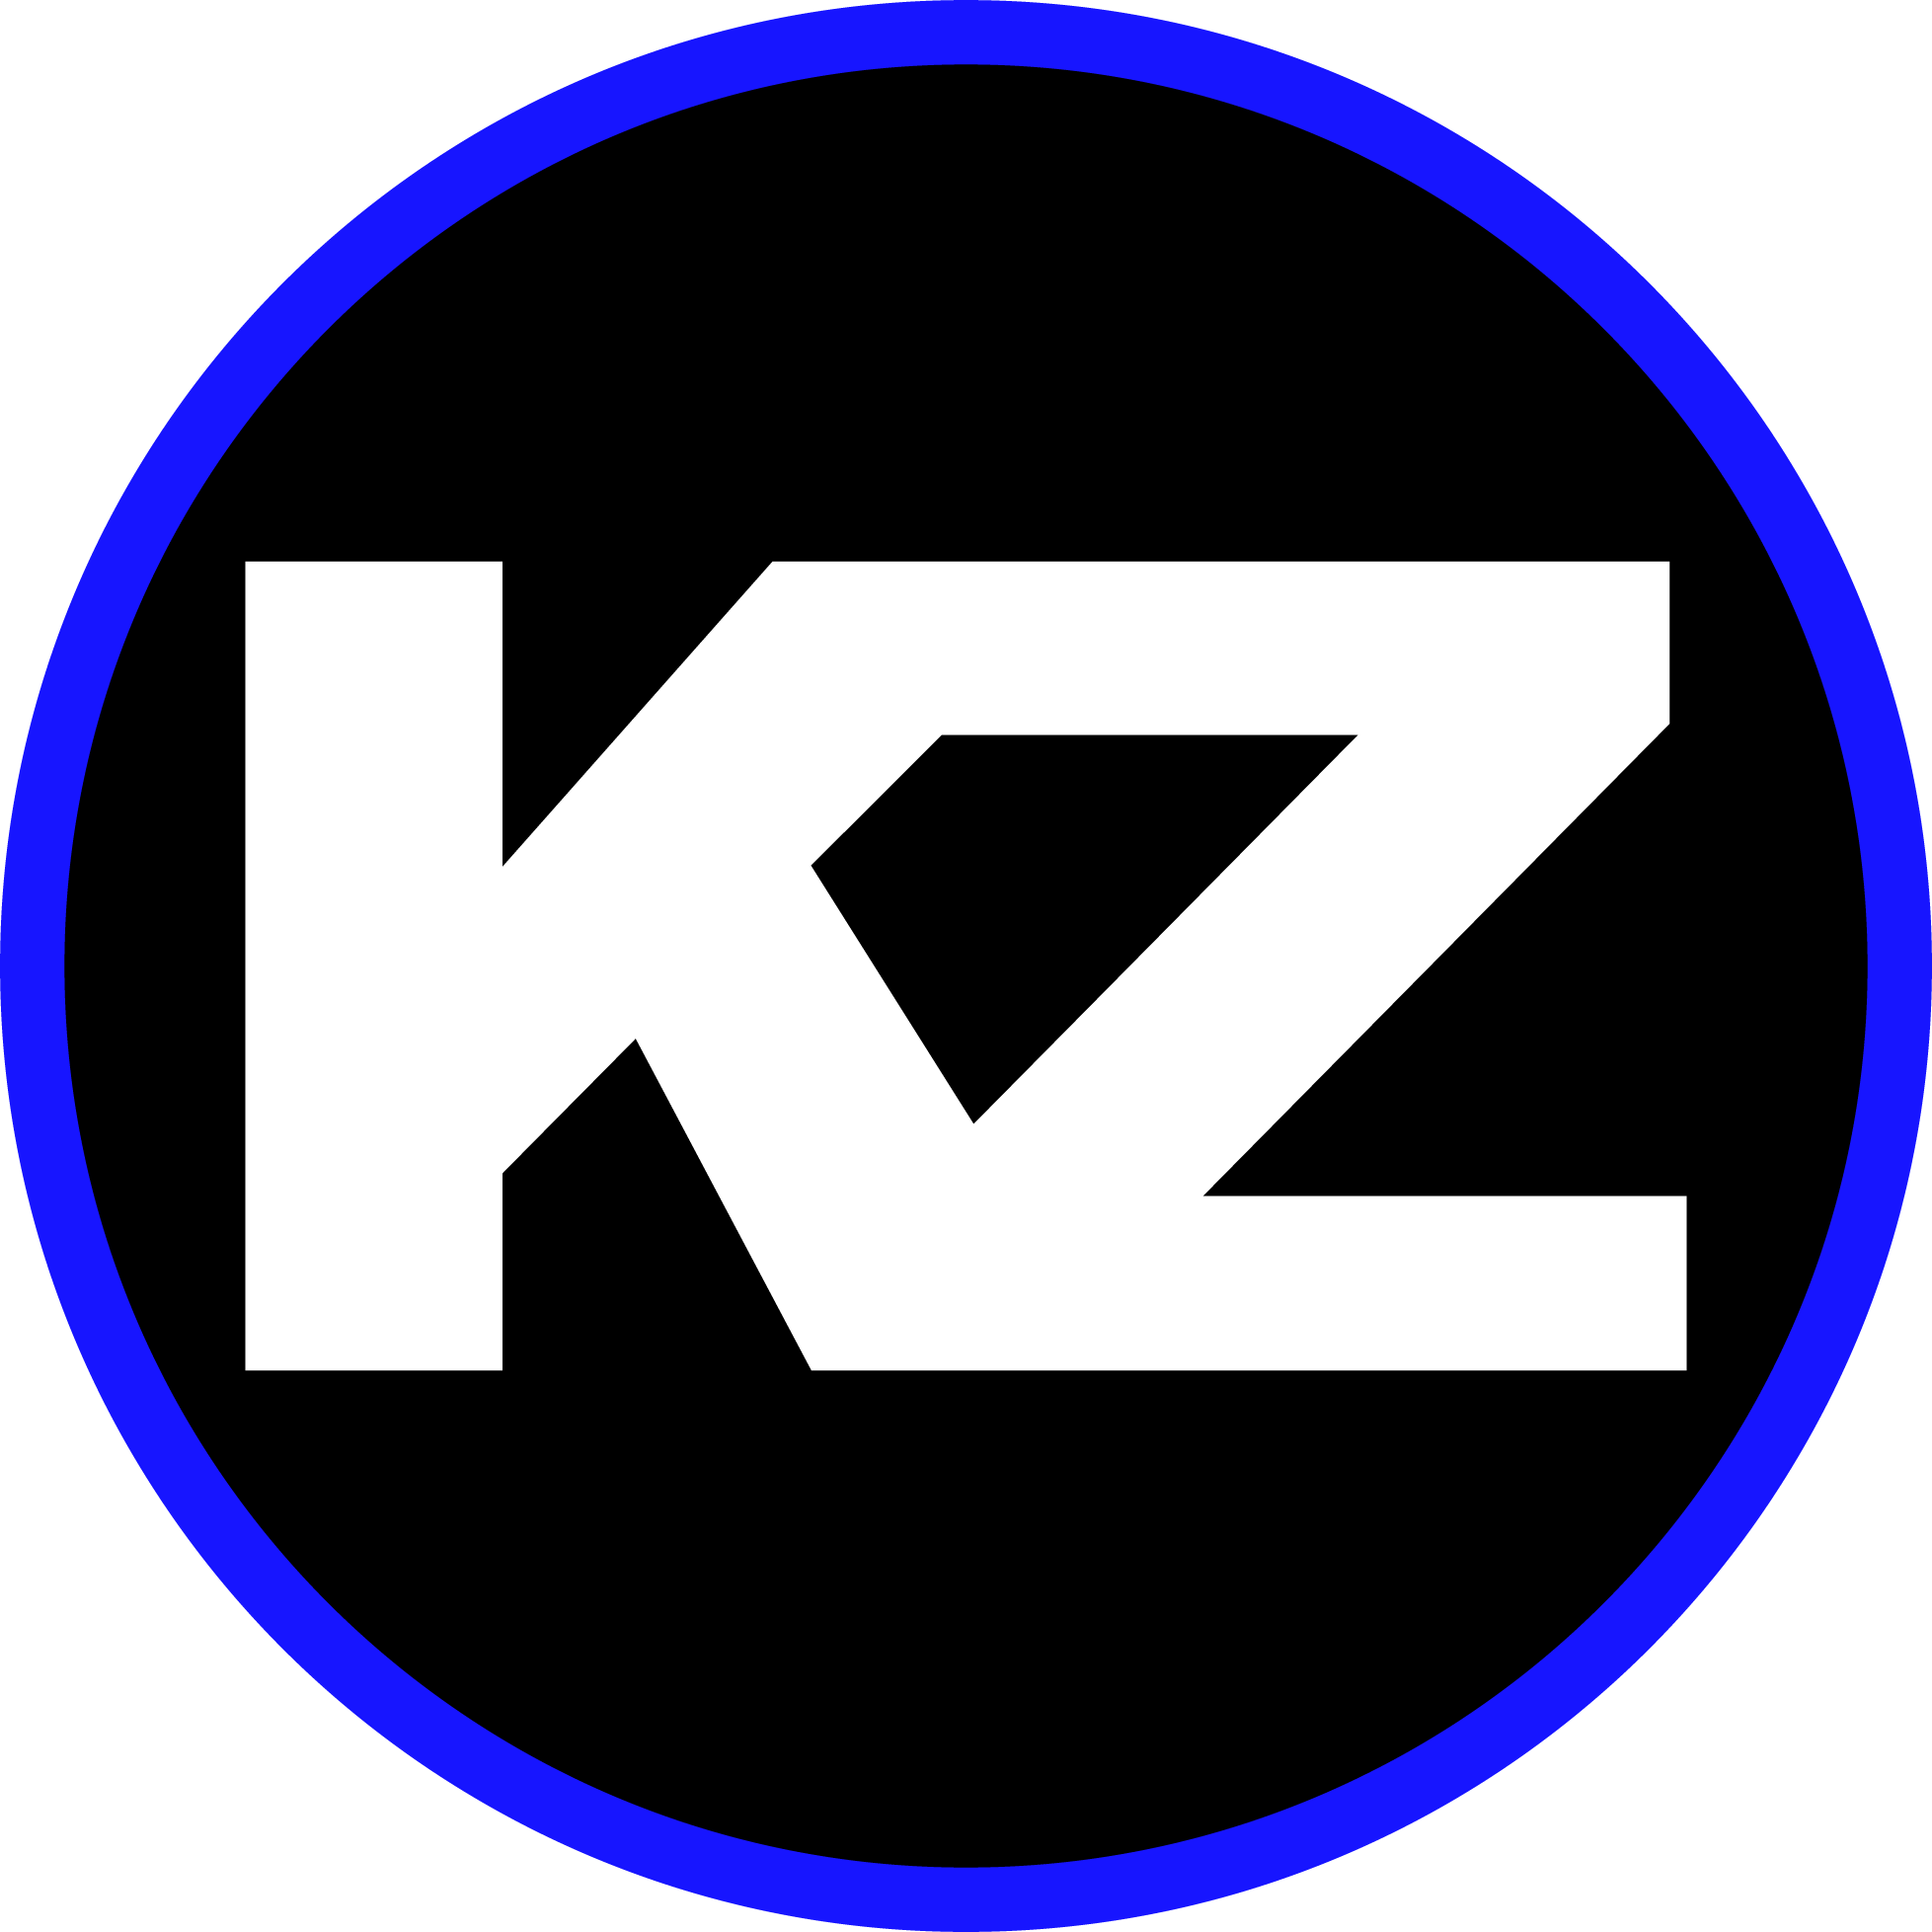 Kz Logo - KZ Celebrates National Drive-Thru Day July 24, 2015! - KZ Companies